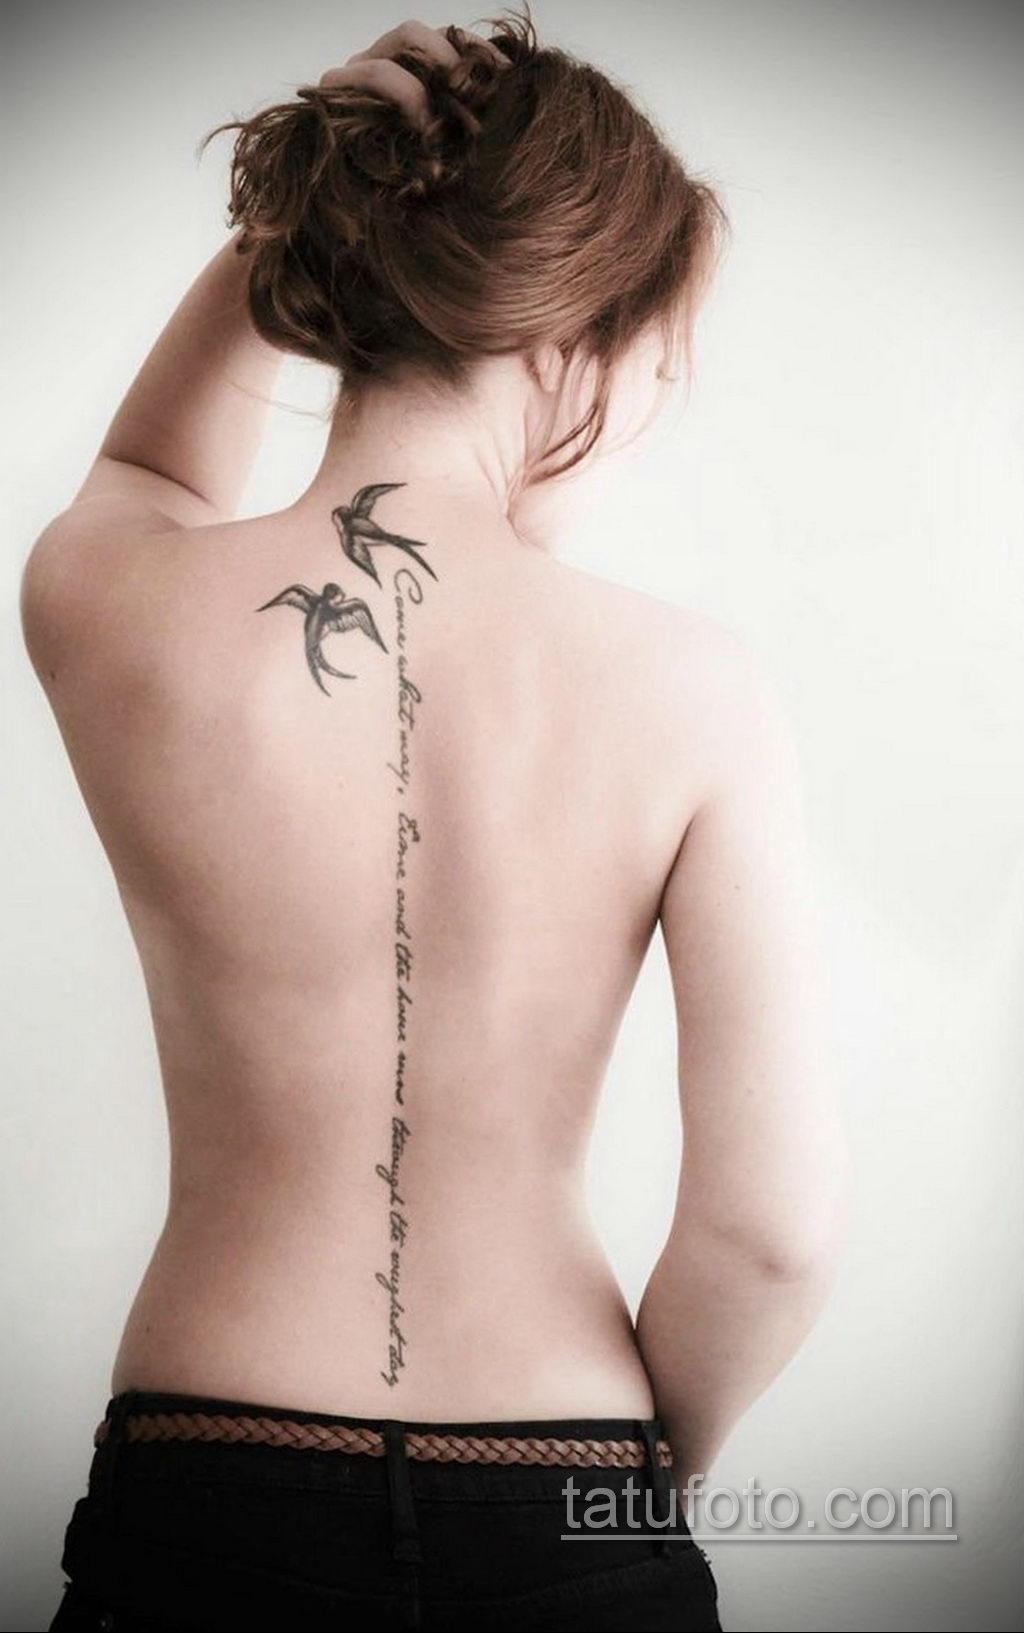 Поясница у девушки. Тату на спине женские. Красивые женские Татуировки. Татуировка Дева. Красивые Татуировки для девушек.